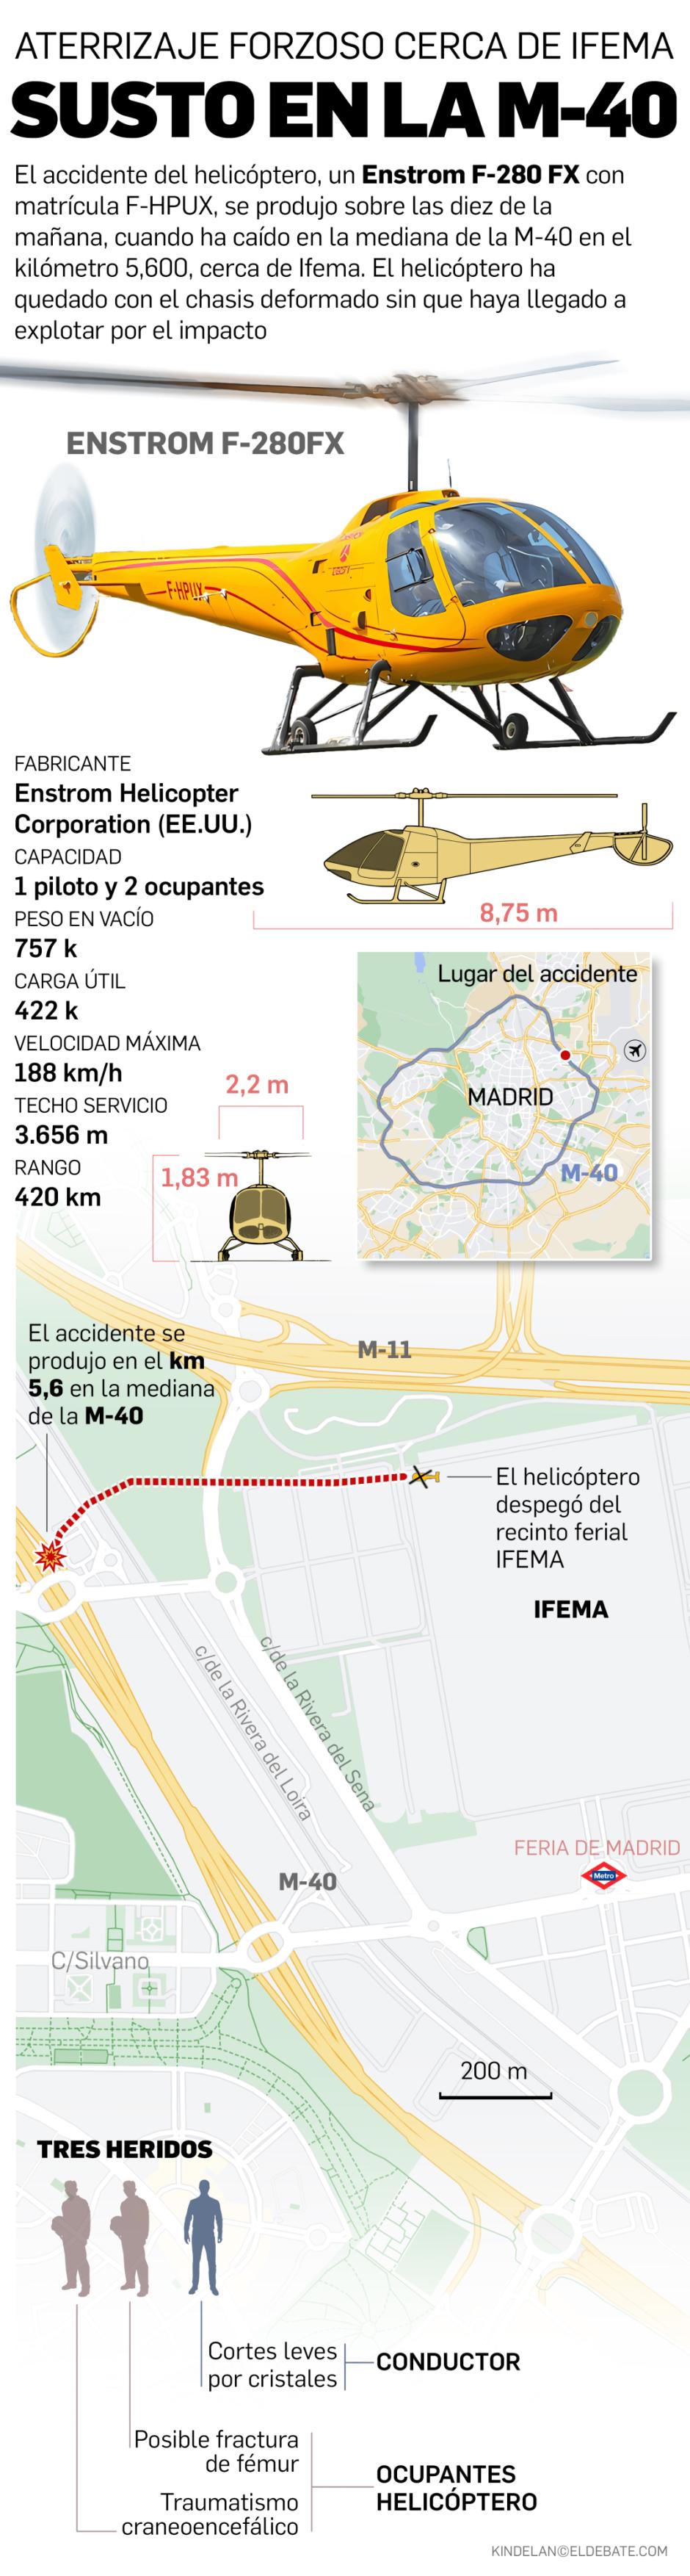 Infografía del accidente del helicóptero en la M-40